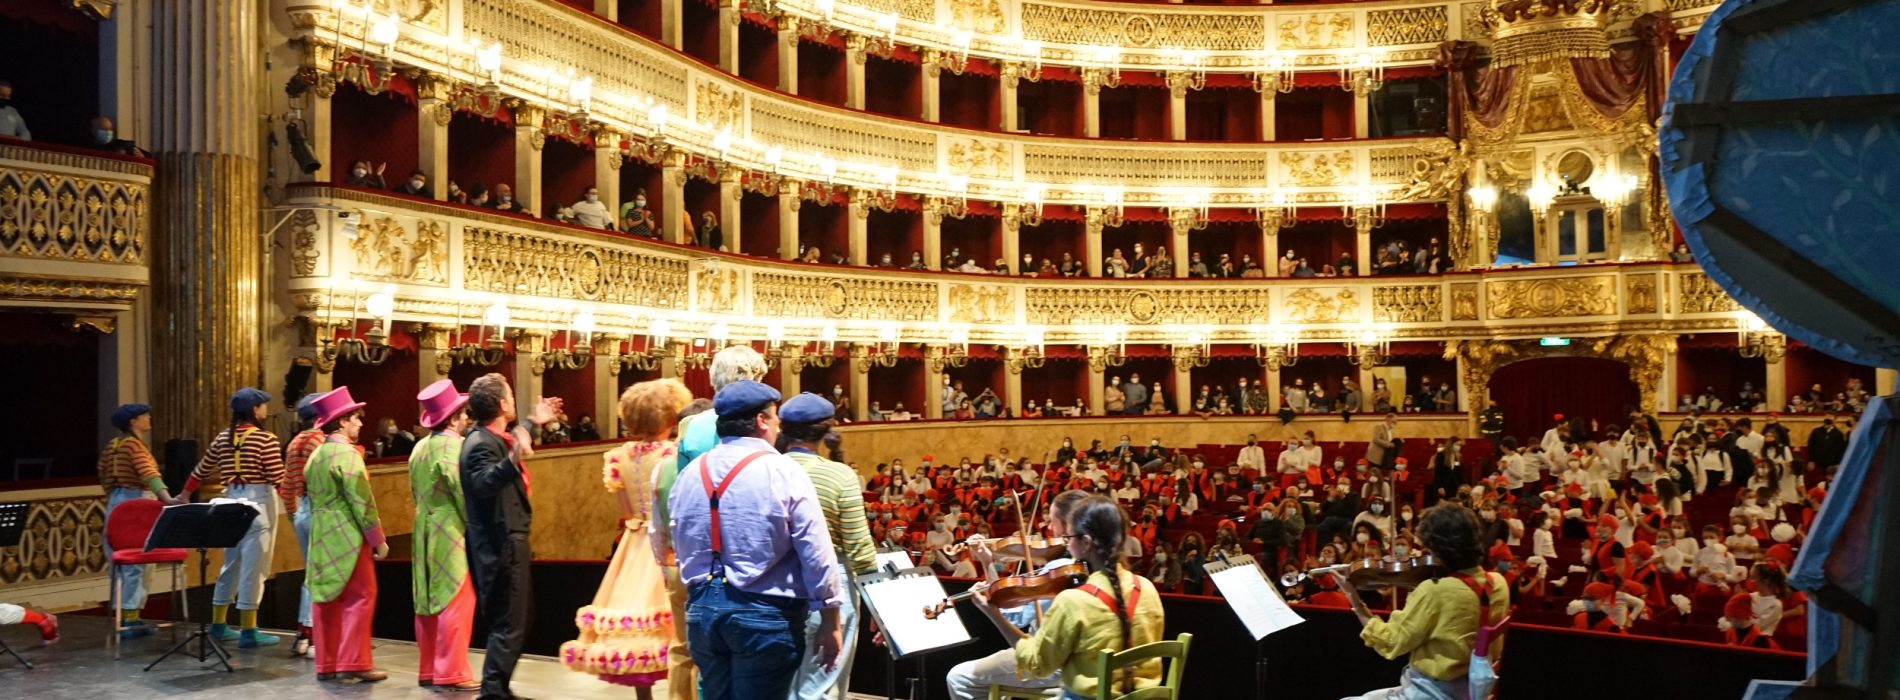 Teatro di San Carlo. ScuolaIncanto, in scena “L’elisir d’amore”